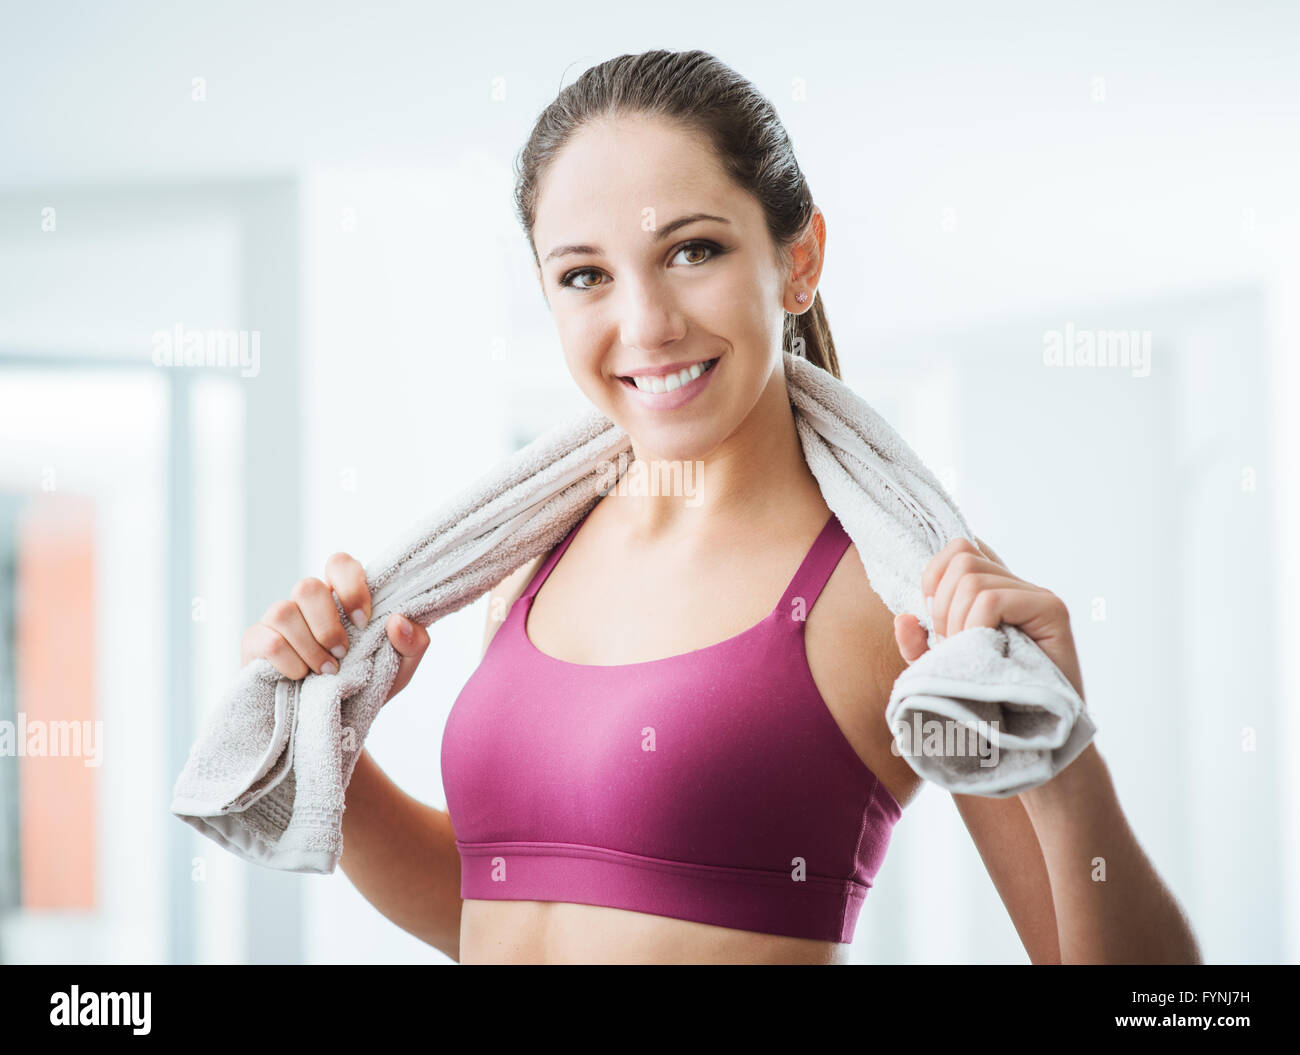 Schöne sportliche Frau mit Handtuch entspannen, im Fitnessstudio trainieren, gesunde Lebensweise und Fitness-Konzept Stockfoto